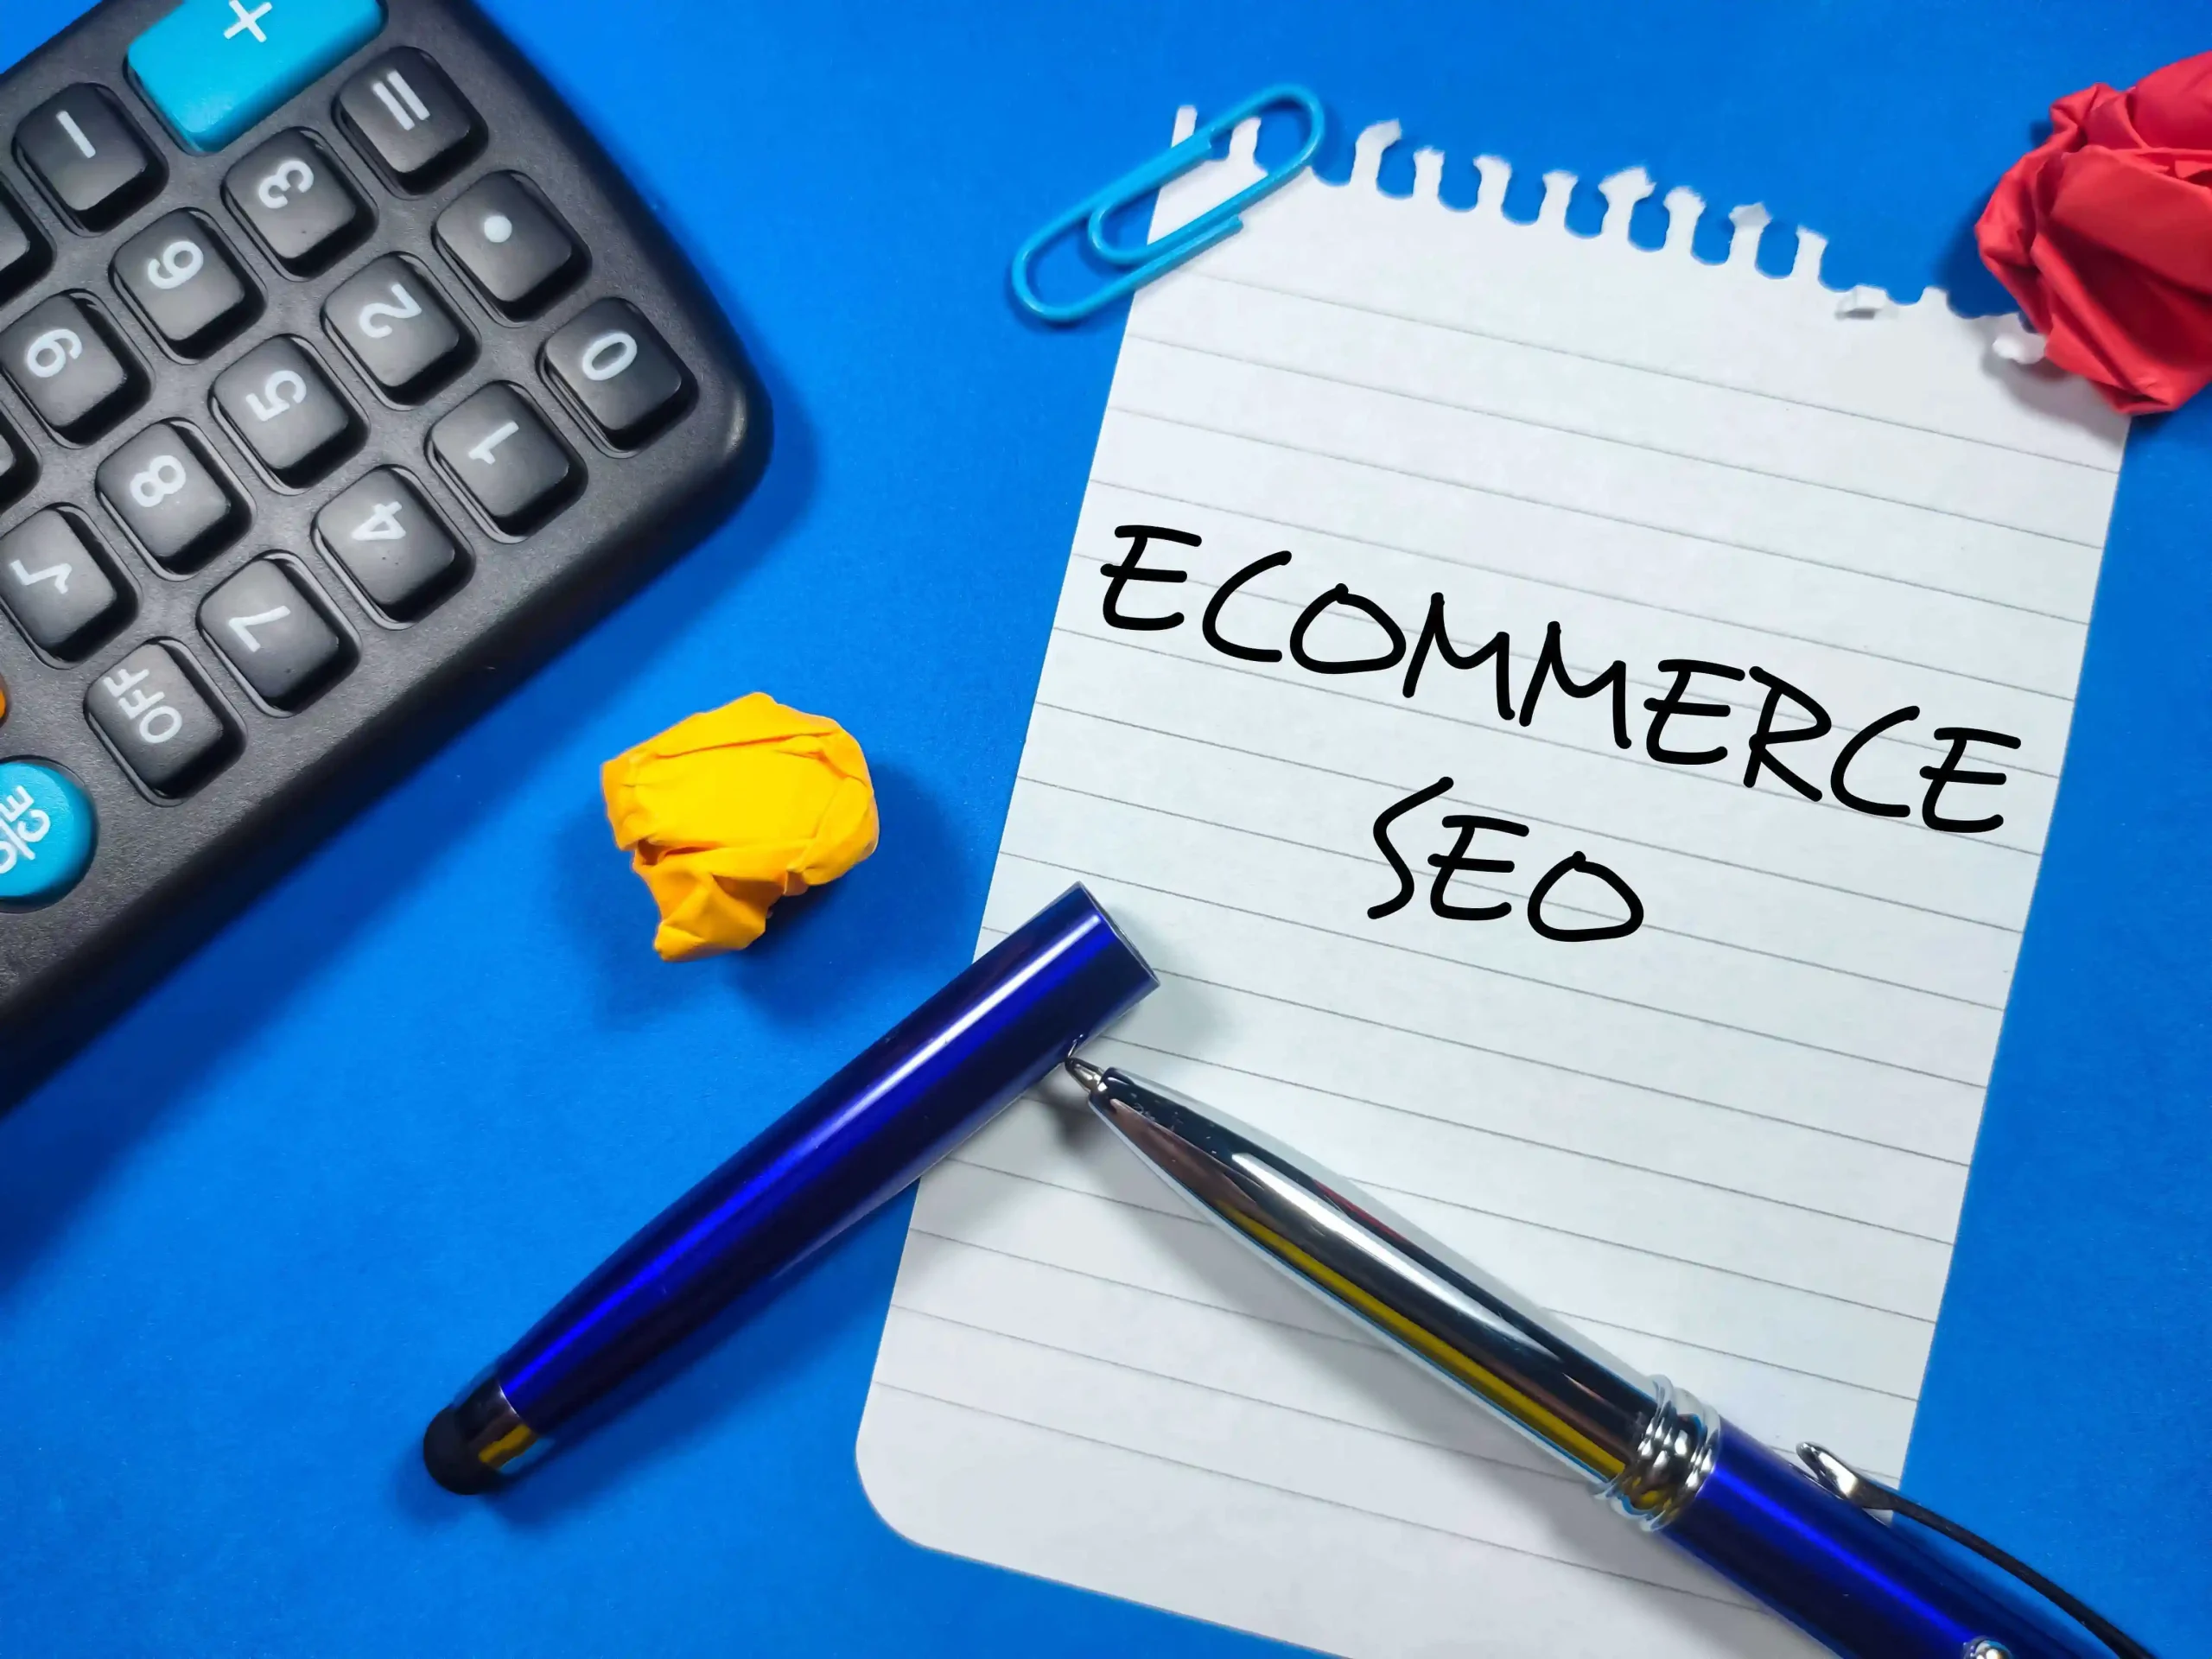 ecommerce SEO best practices